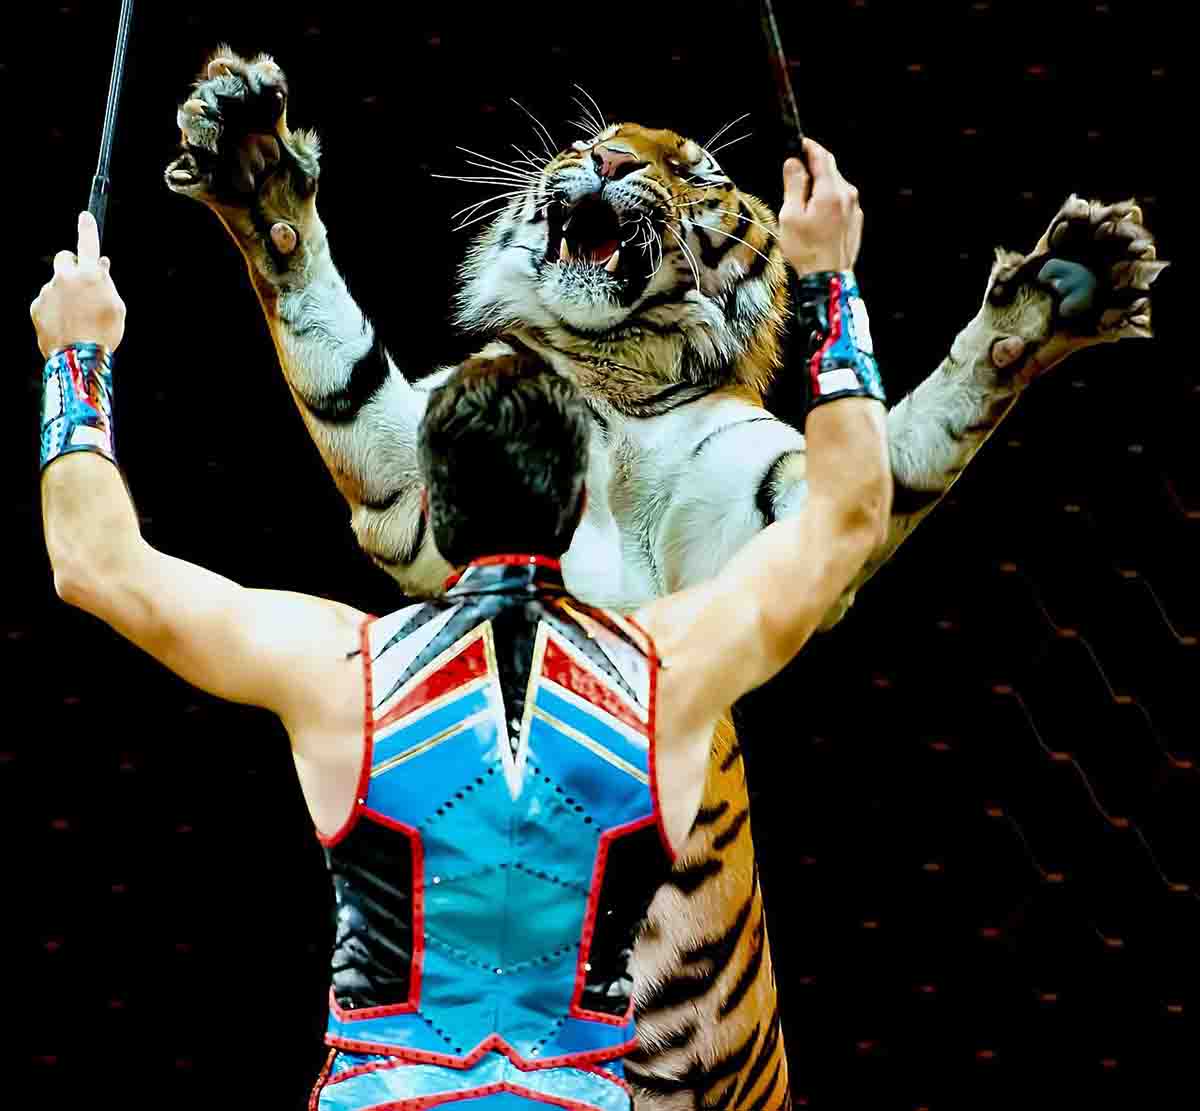 Los circos con animales salvajes han quedado excluidos de las subvenciones públicas / Foto: Clarence Alford - Pixabay